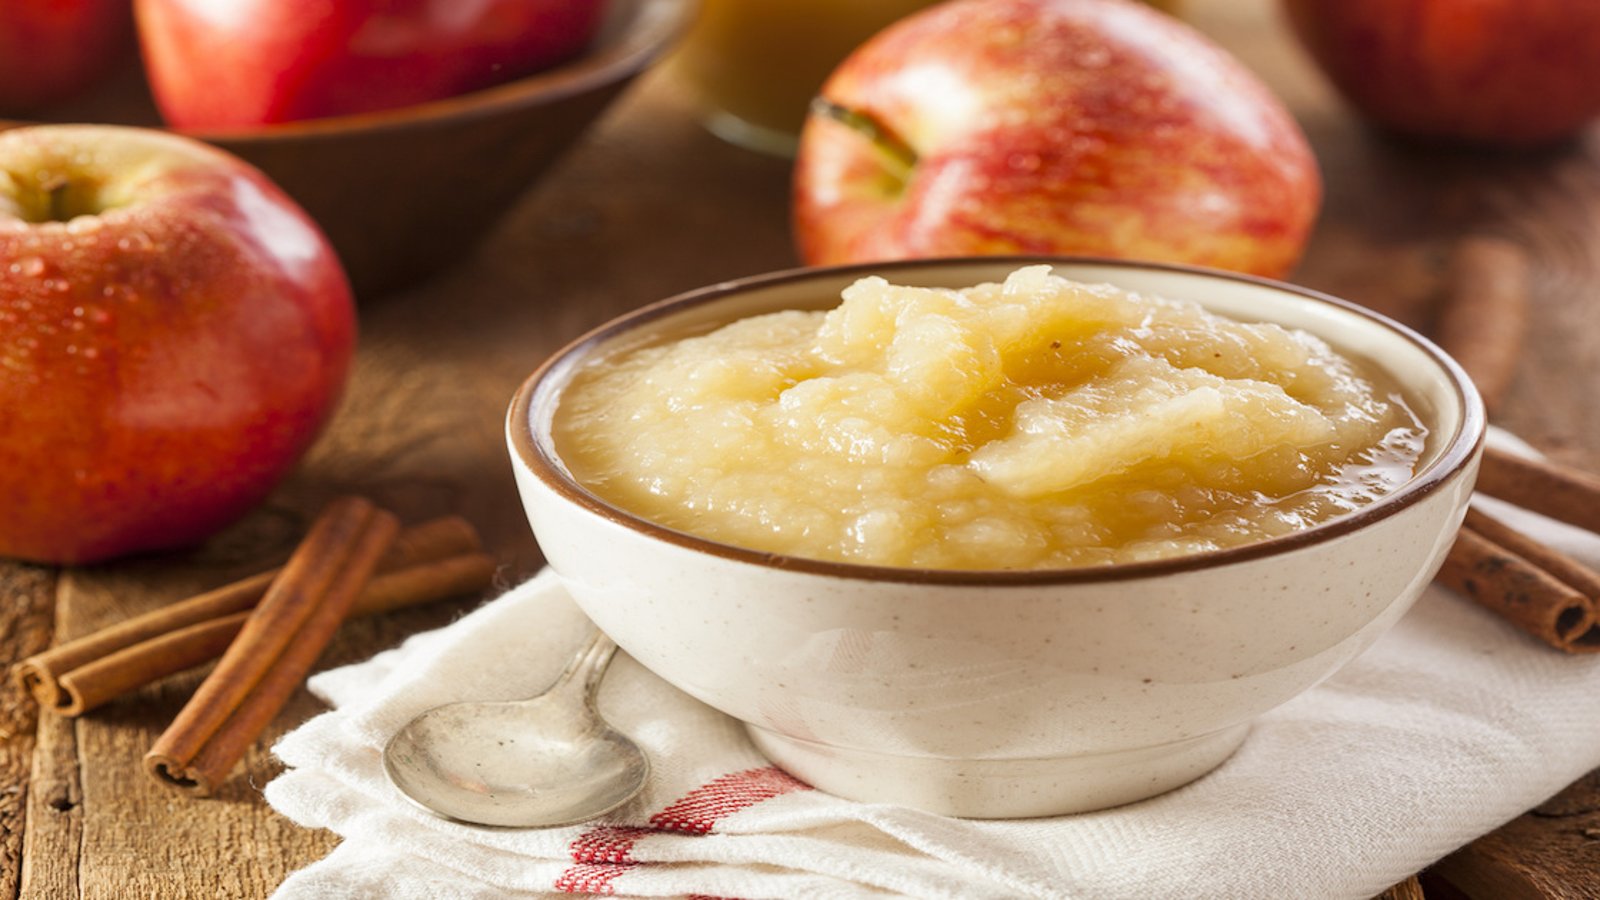 Les 5 secrets de base pour cuisiner la meilleure compote de pommes! 